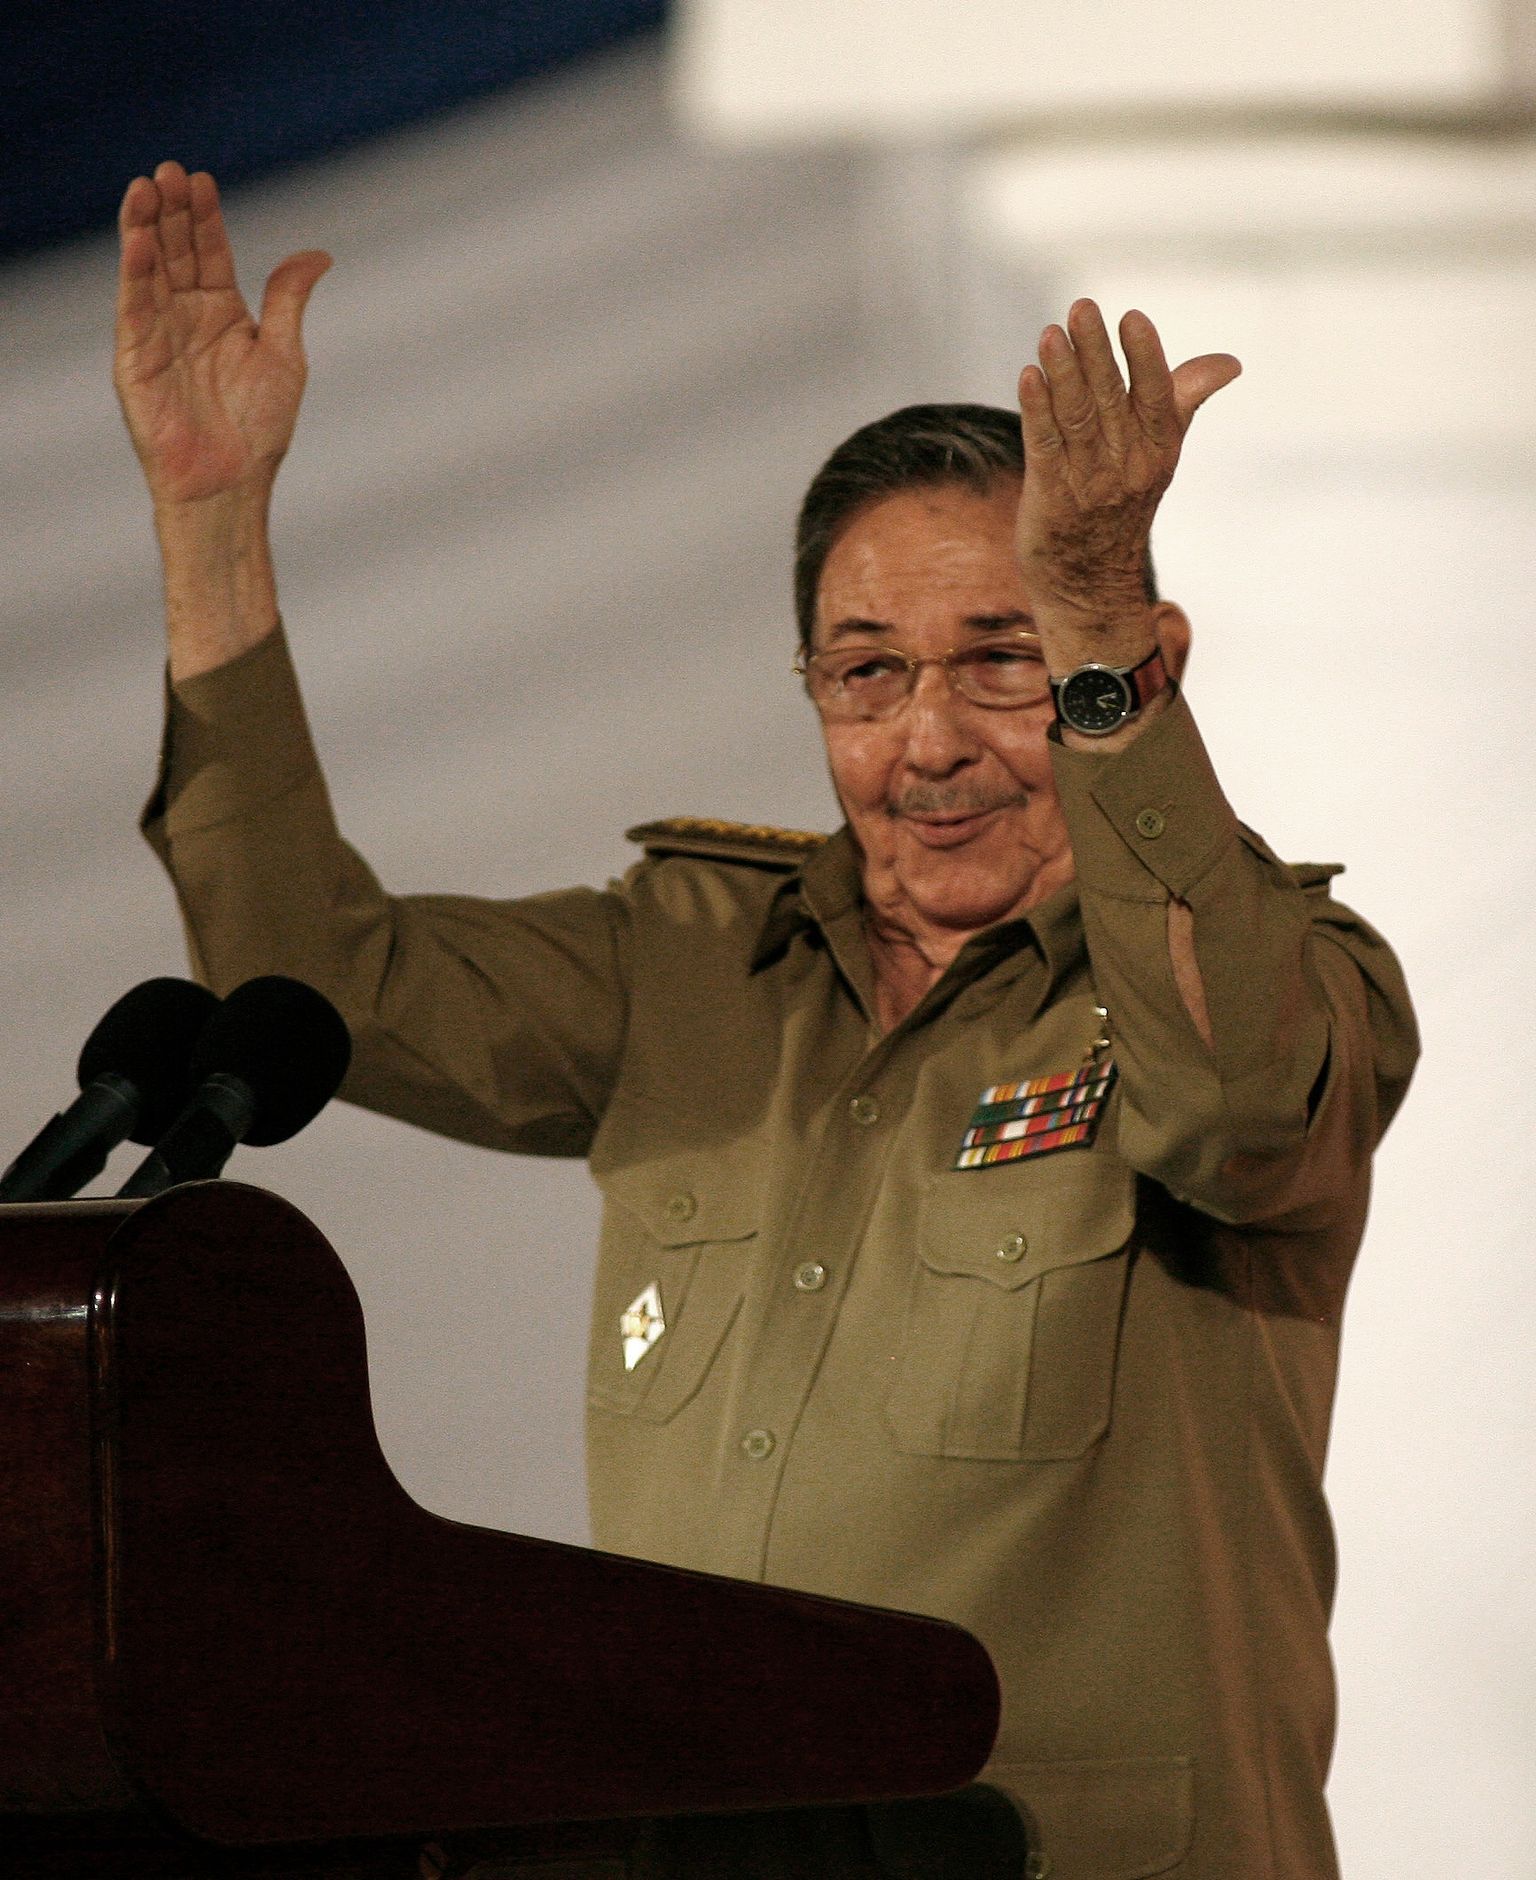 Младший брат и соратник бывшего лидера Кубы Фиделя Кастро, Рауль участвовал в кубинской революции 1959 года, после победы которой стал военным министром Кубы, занимая этот пост в течение 50 лет.